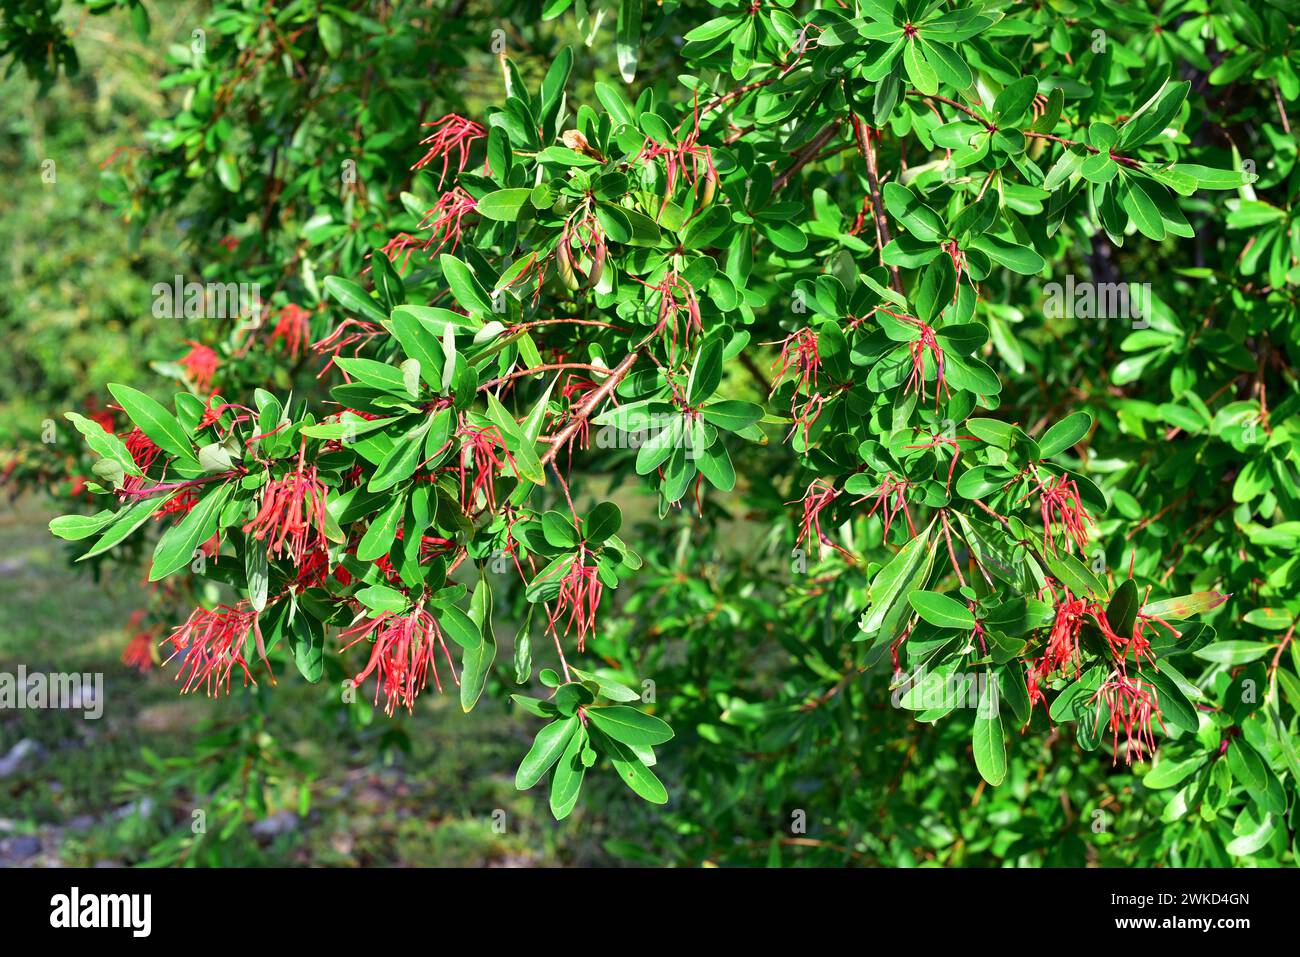 Notro oder chilenischer Feuerbaum (Embothrium coccineum) ist ein kleiner immergrüner Baum, der in den gemäßigten Regionen Chiles und Argentiniens beheimatet ist. Blumen, Früchte und lea Stockfoto